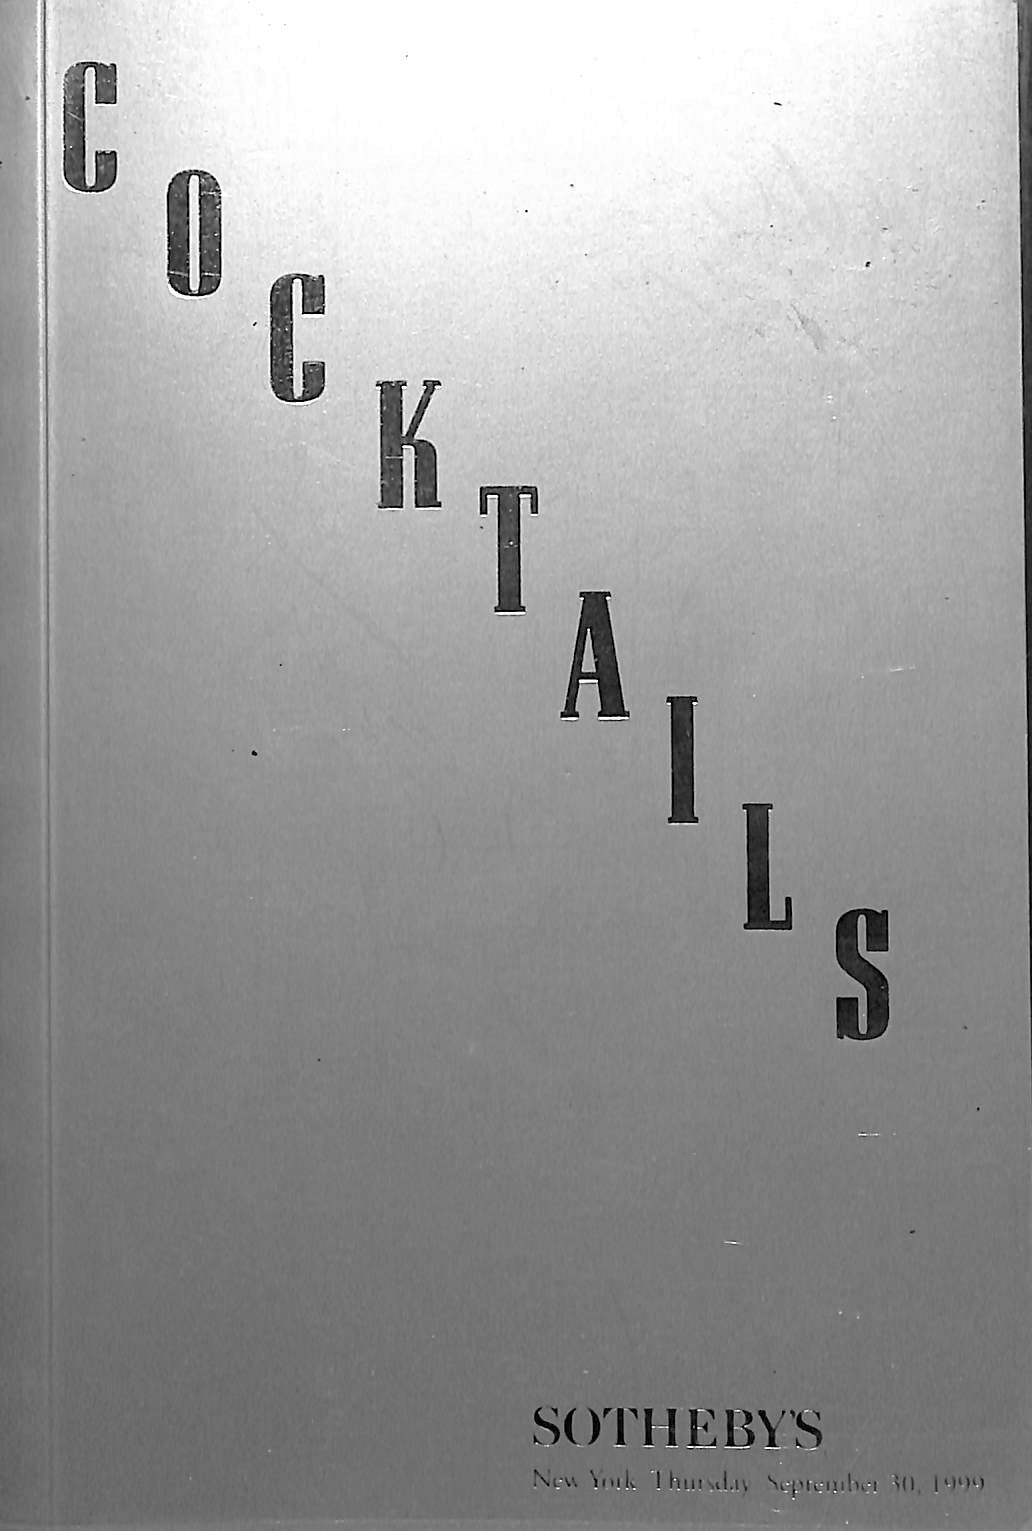 "Cocktails: Sothebys Sept. 30, 1999"